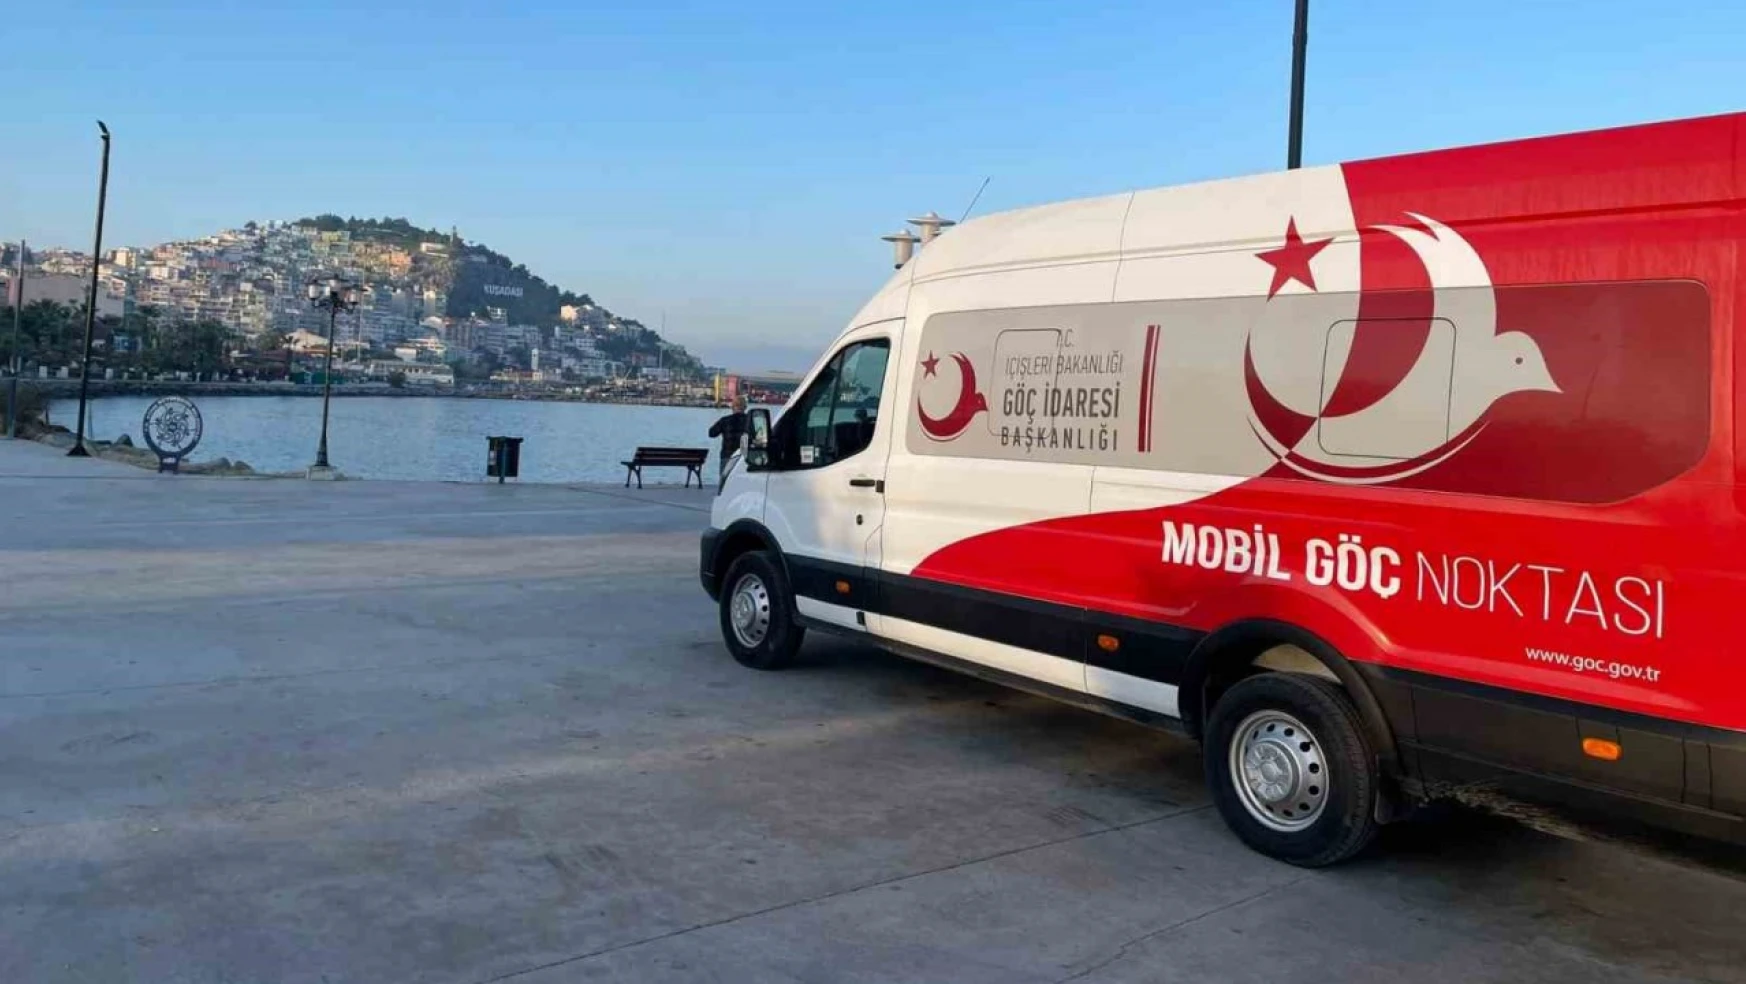 Aydın'da Mobil Göç Noktaları kuruldu